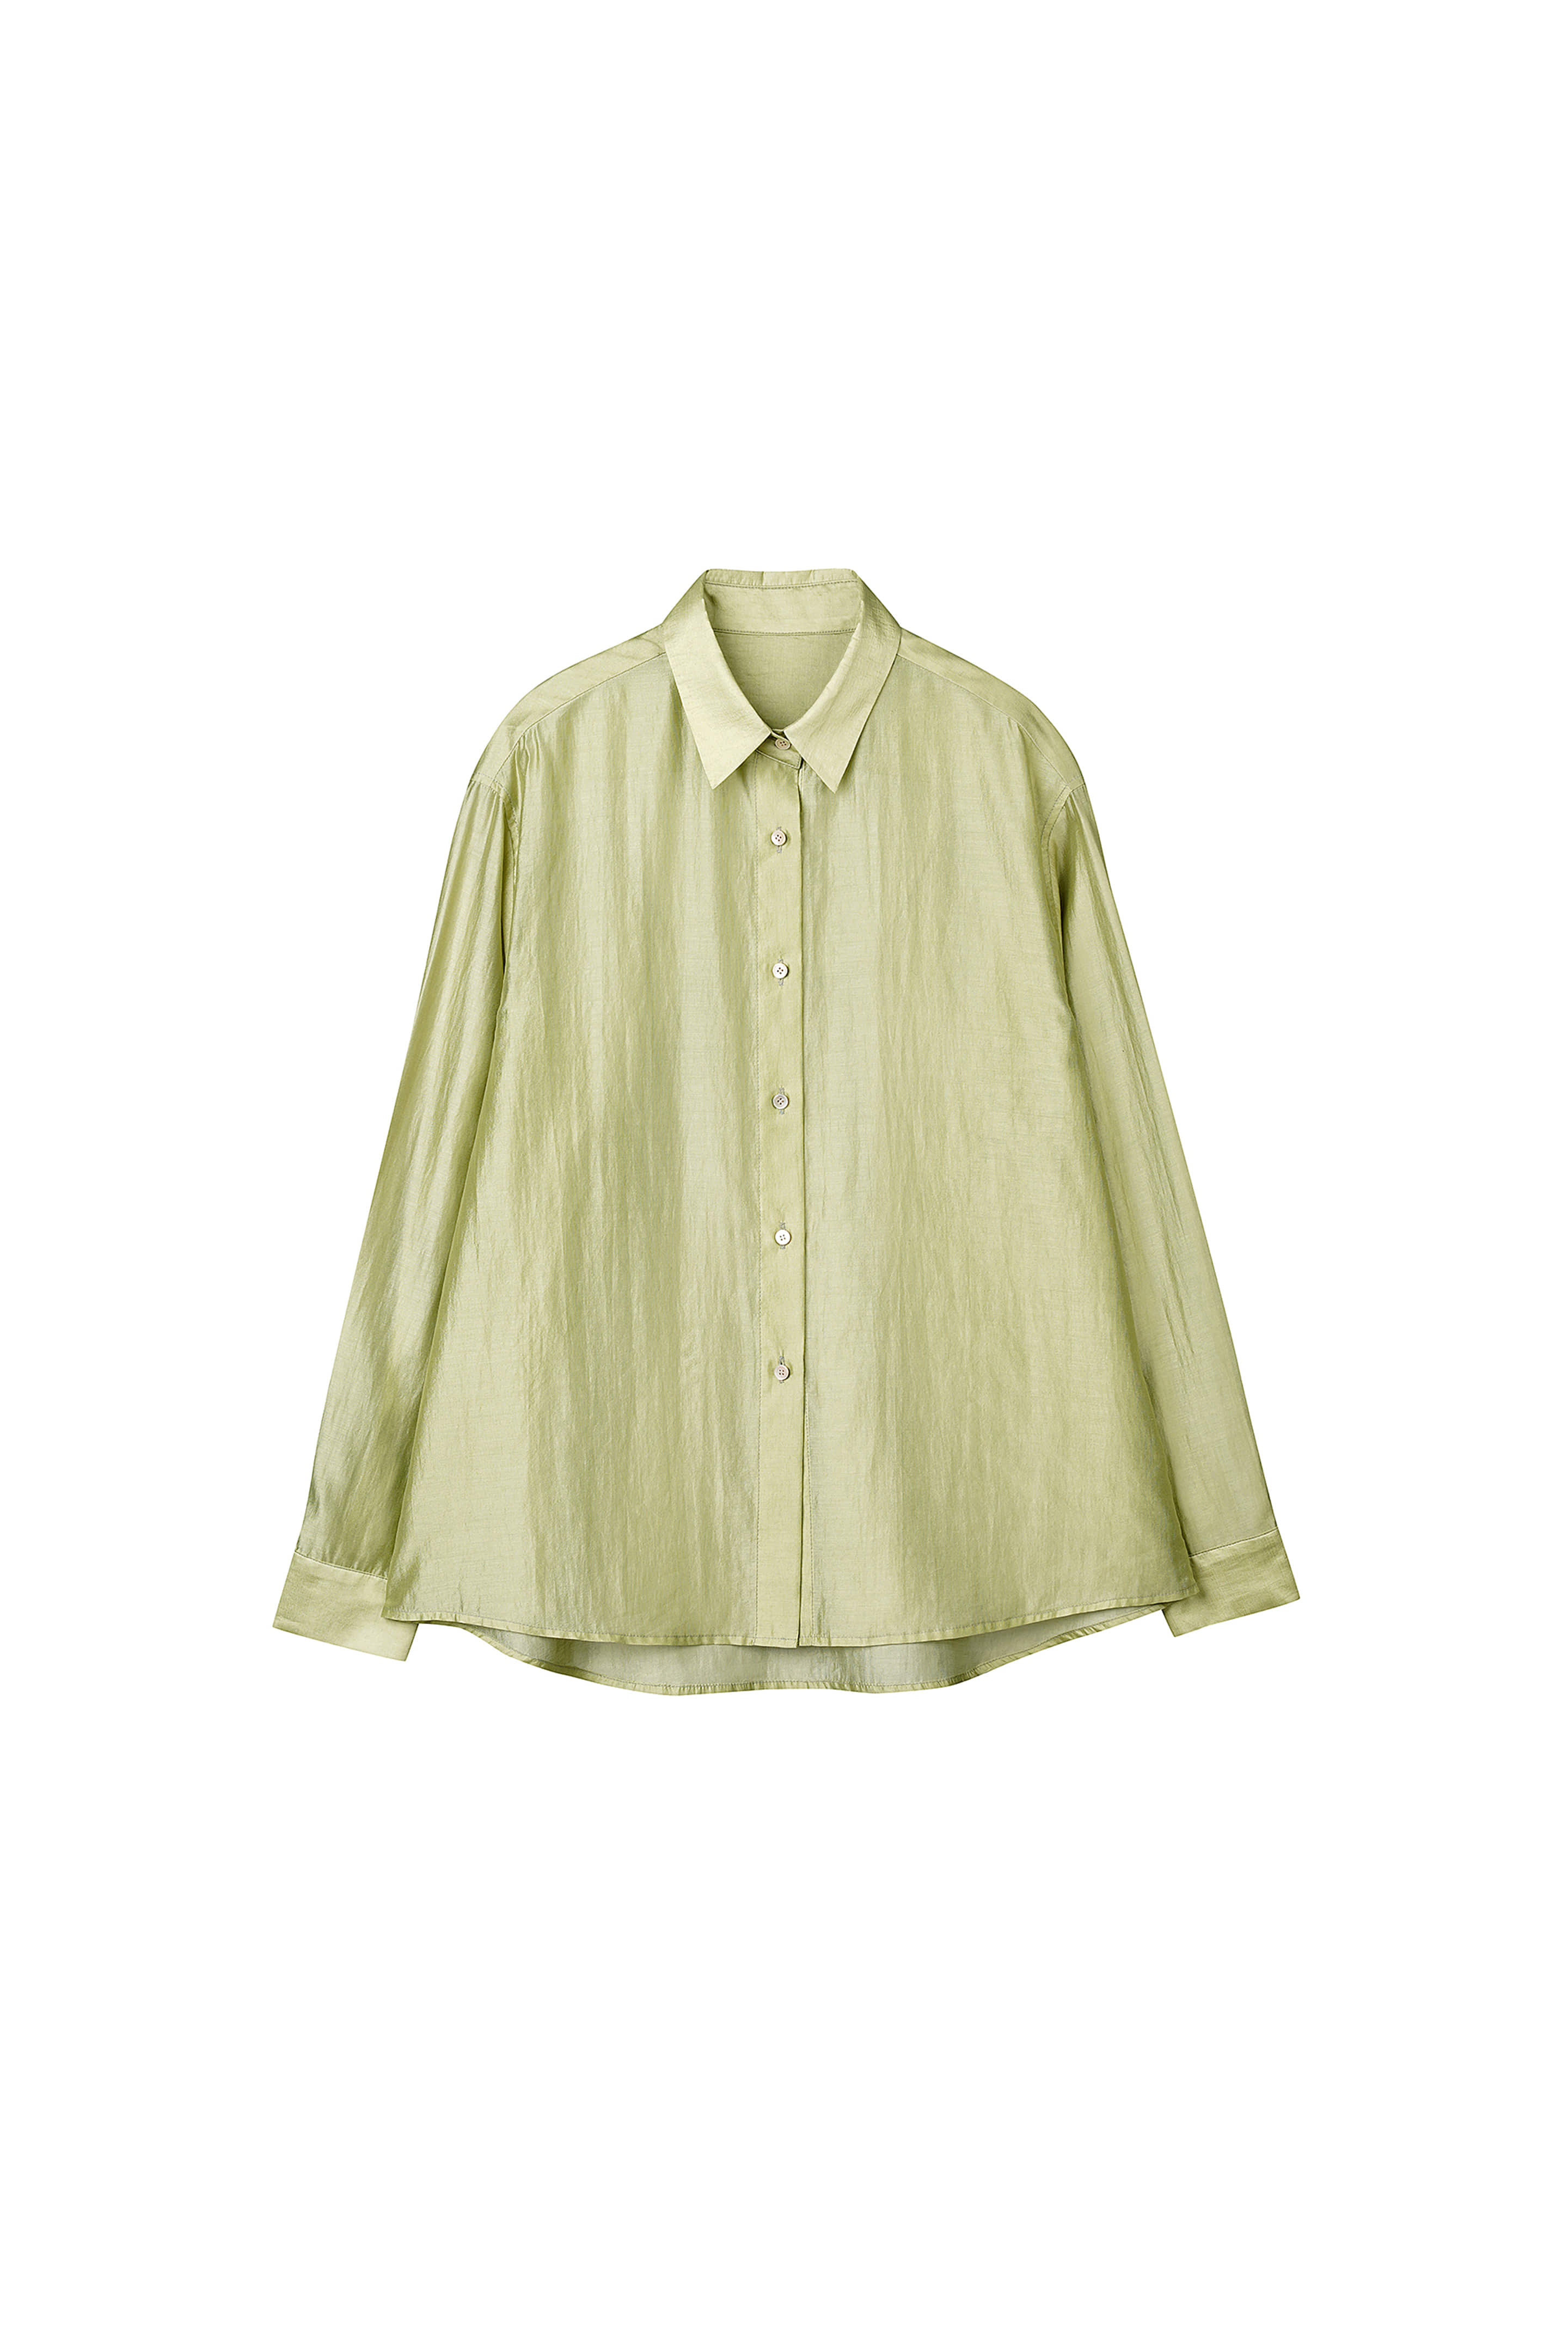 3rd) Sunny Shirt Lime [01.24(MON) 14:00]